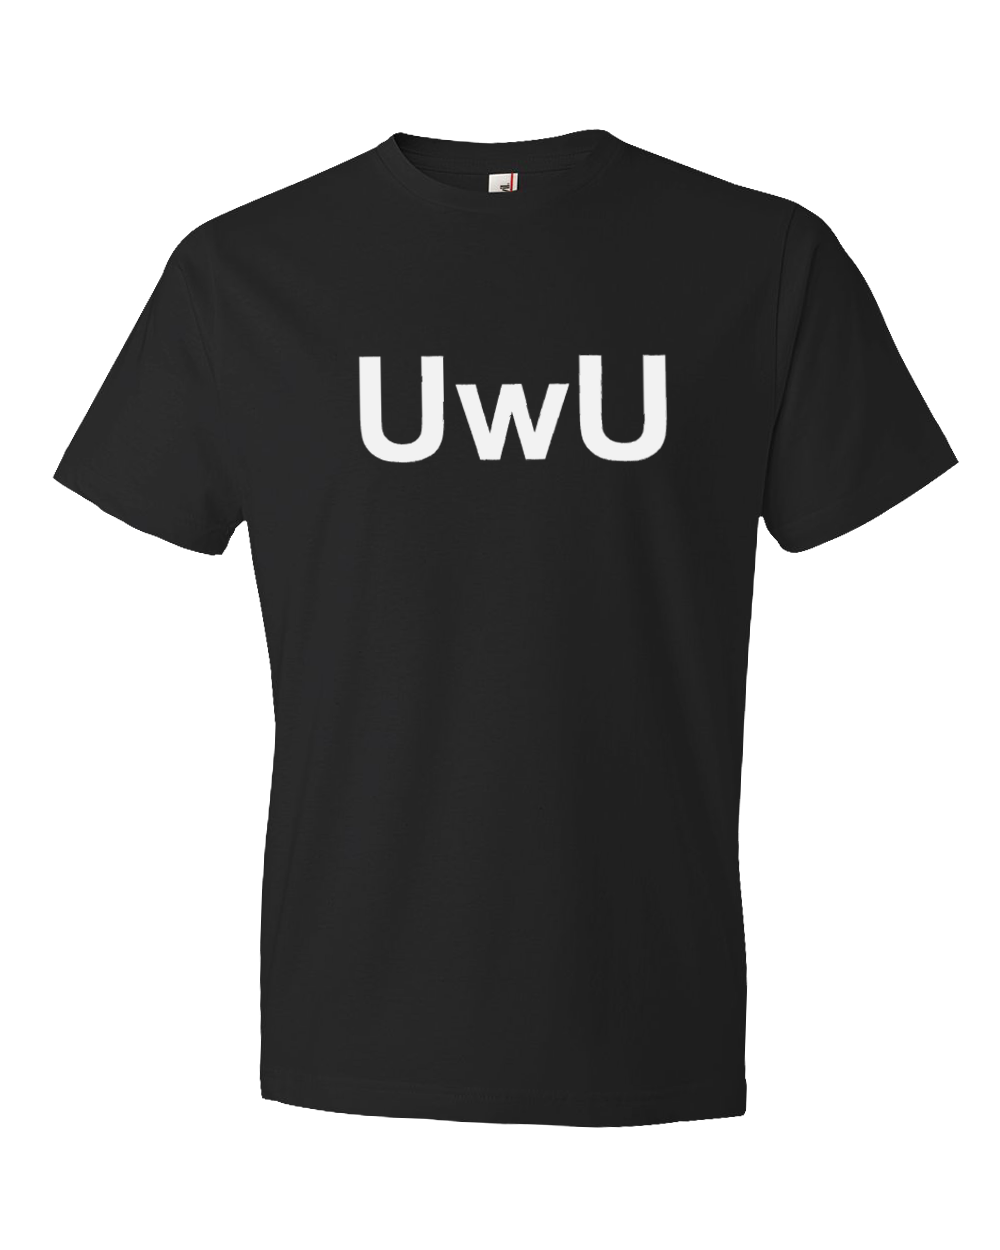 UwU Weeb T-Shirt